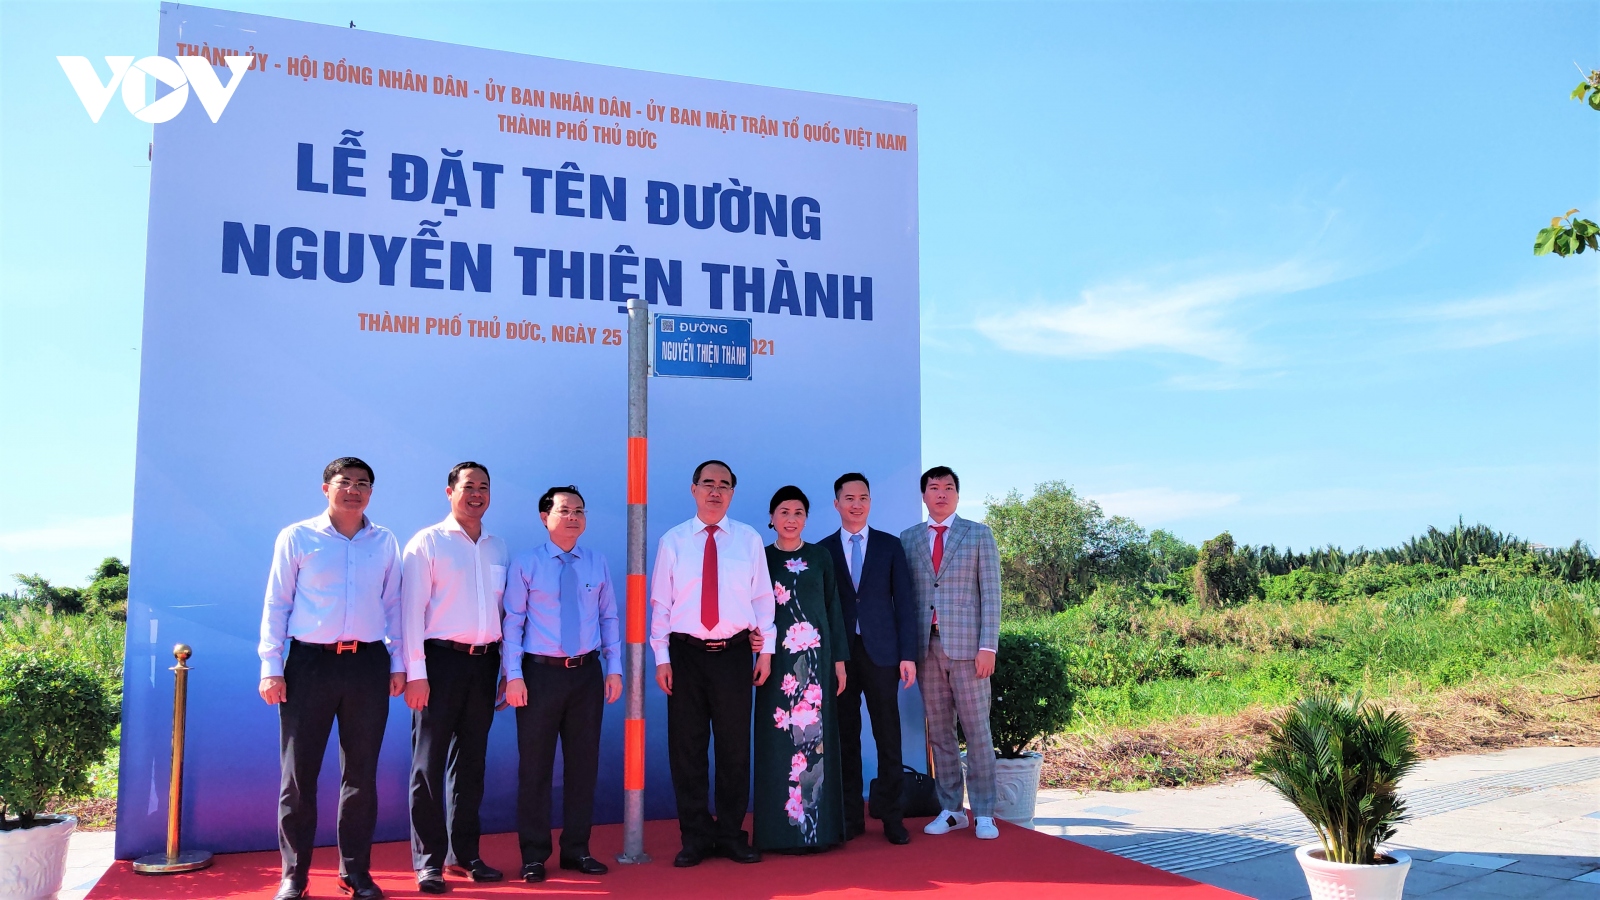 20 tên danh nhân, mẹ Việt Nam anh hùng được chọn để đặt tên đường ở Thủ Đức